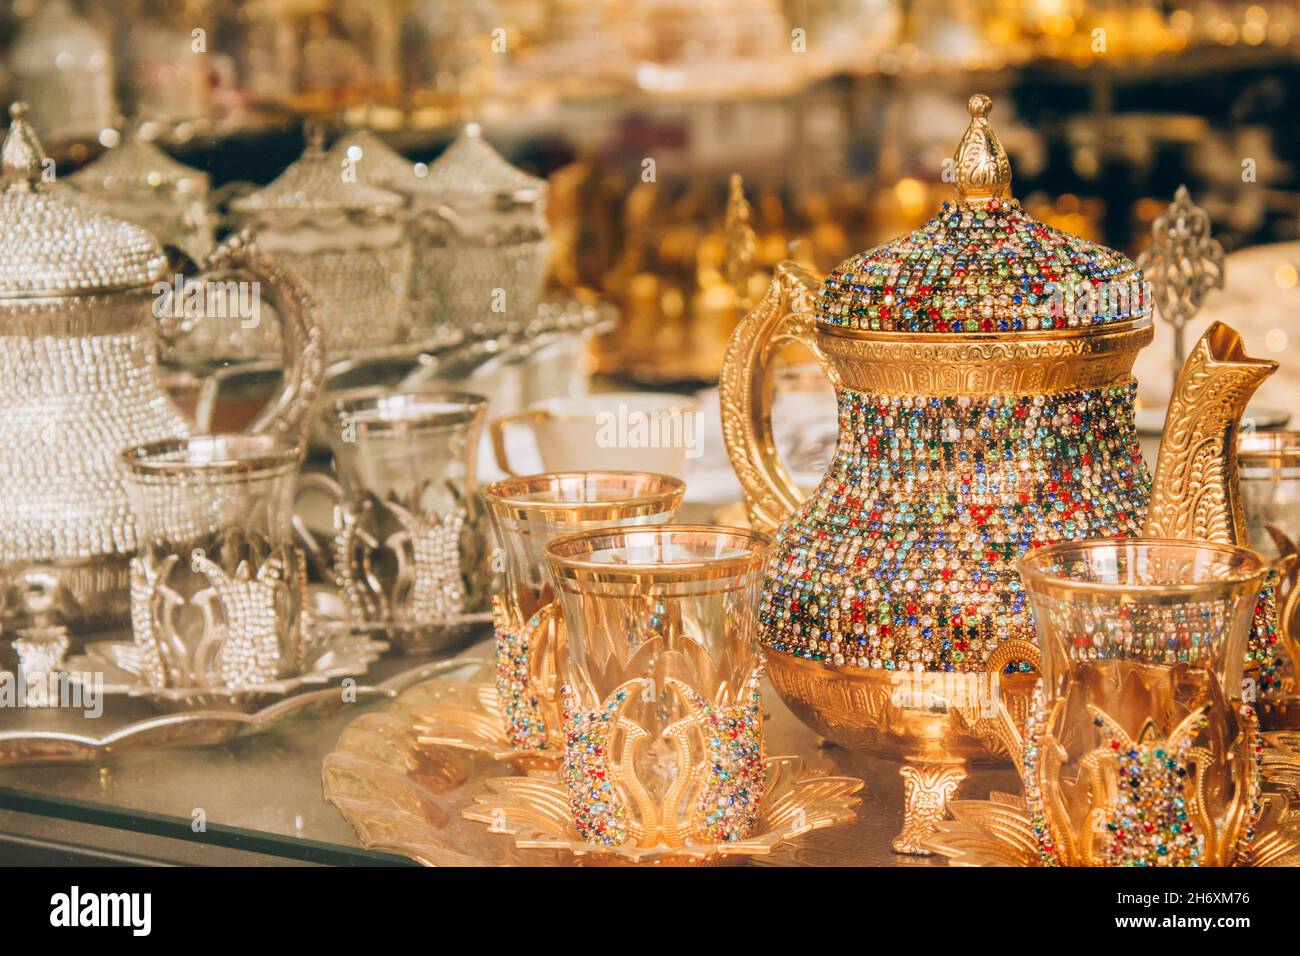 Des thés turcs traditionnels sont servis dans la boutique de souvenirs.Plateau thé avec théière décorée de cristaux multicolores.Souvenir et présent populaires Banque D'Images